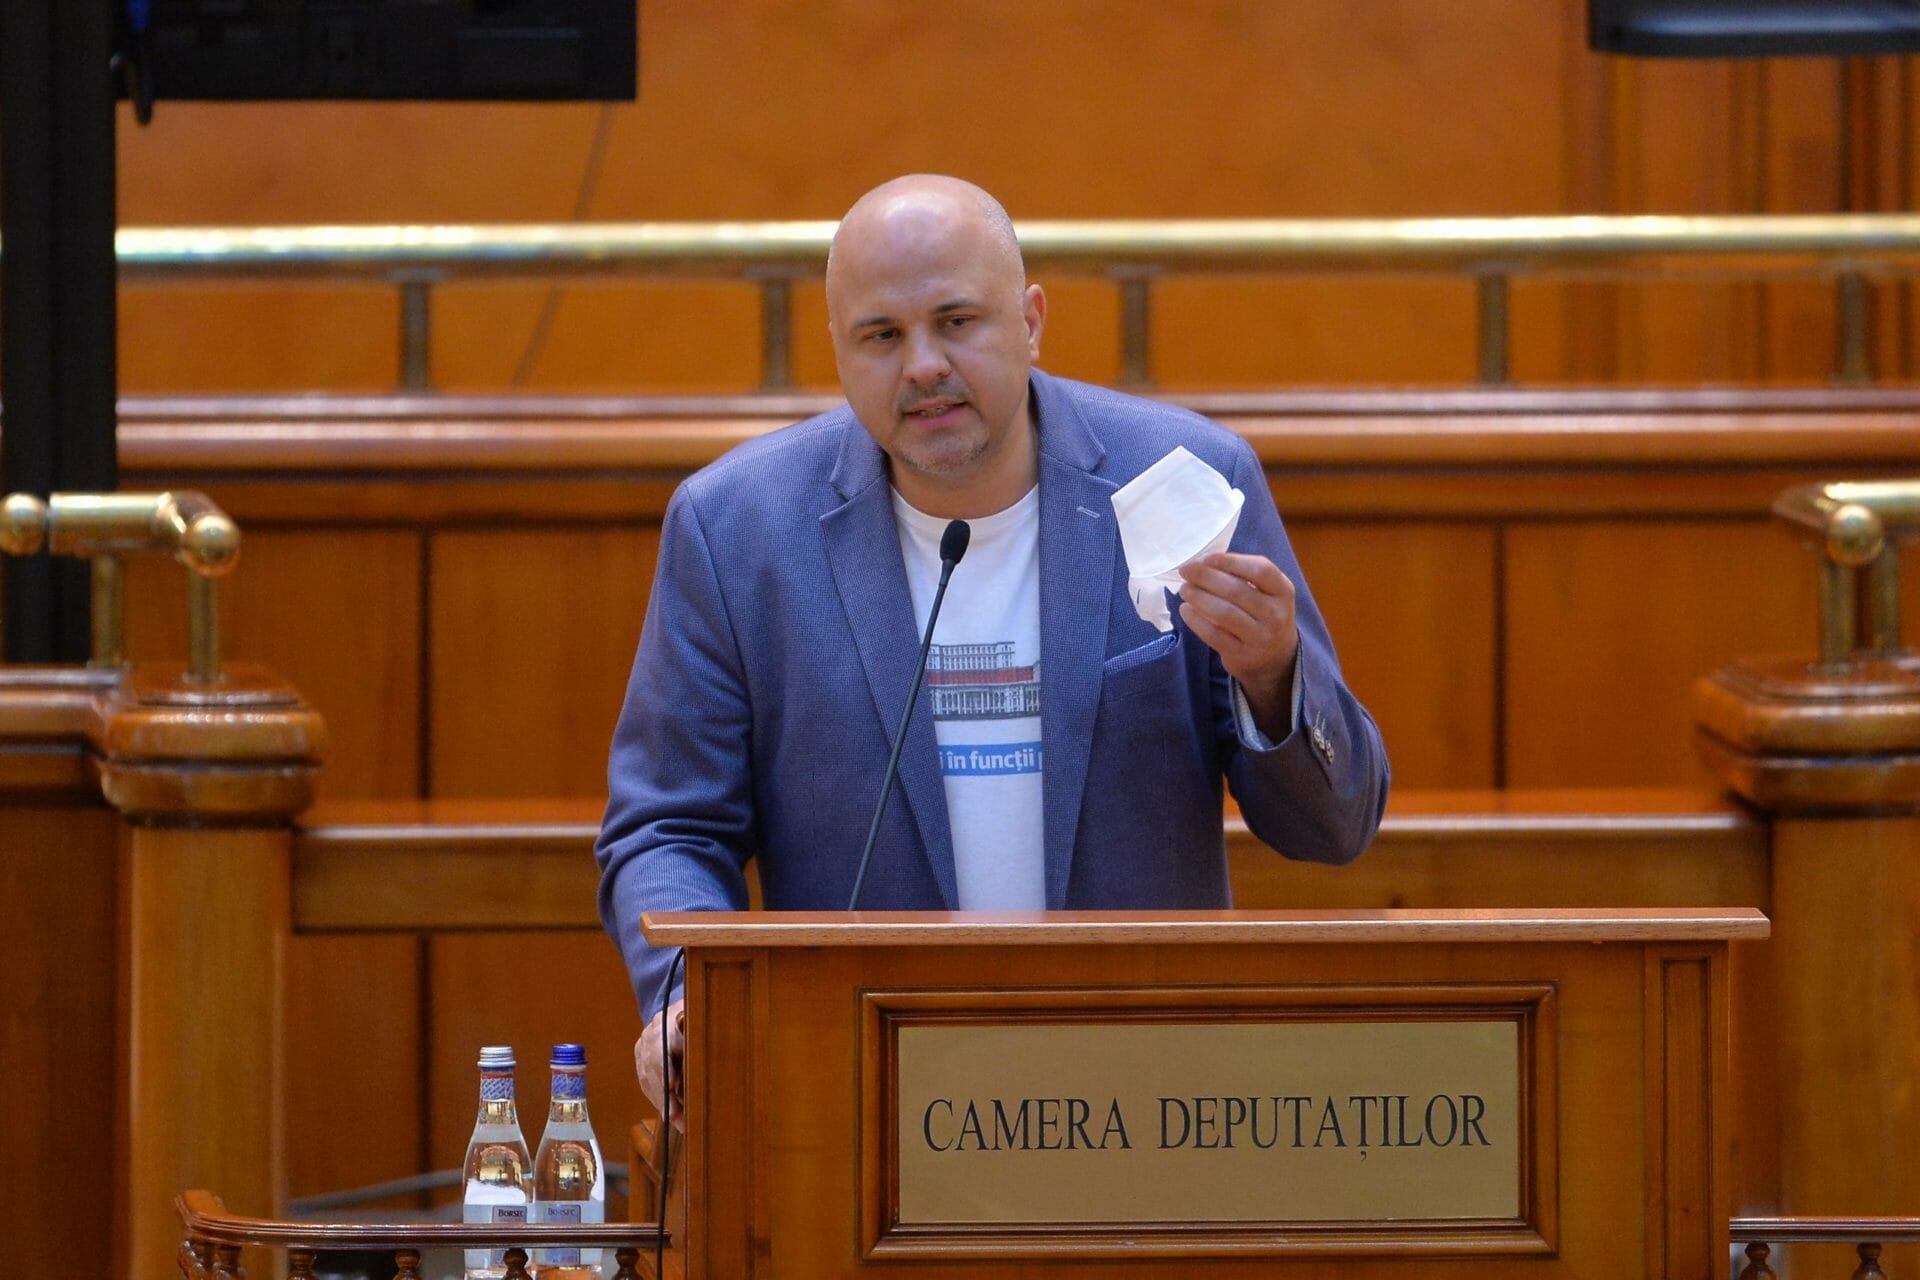 Emanuel Ungureanu: Cîțu a consumat droguri. Chiar ar fi imagini care îl descriu în această ipostază